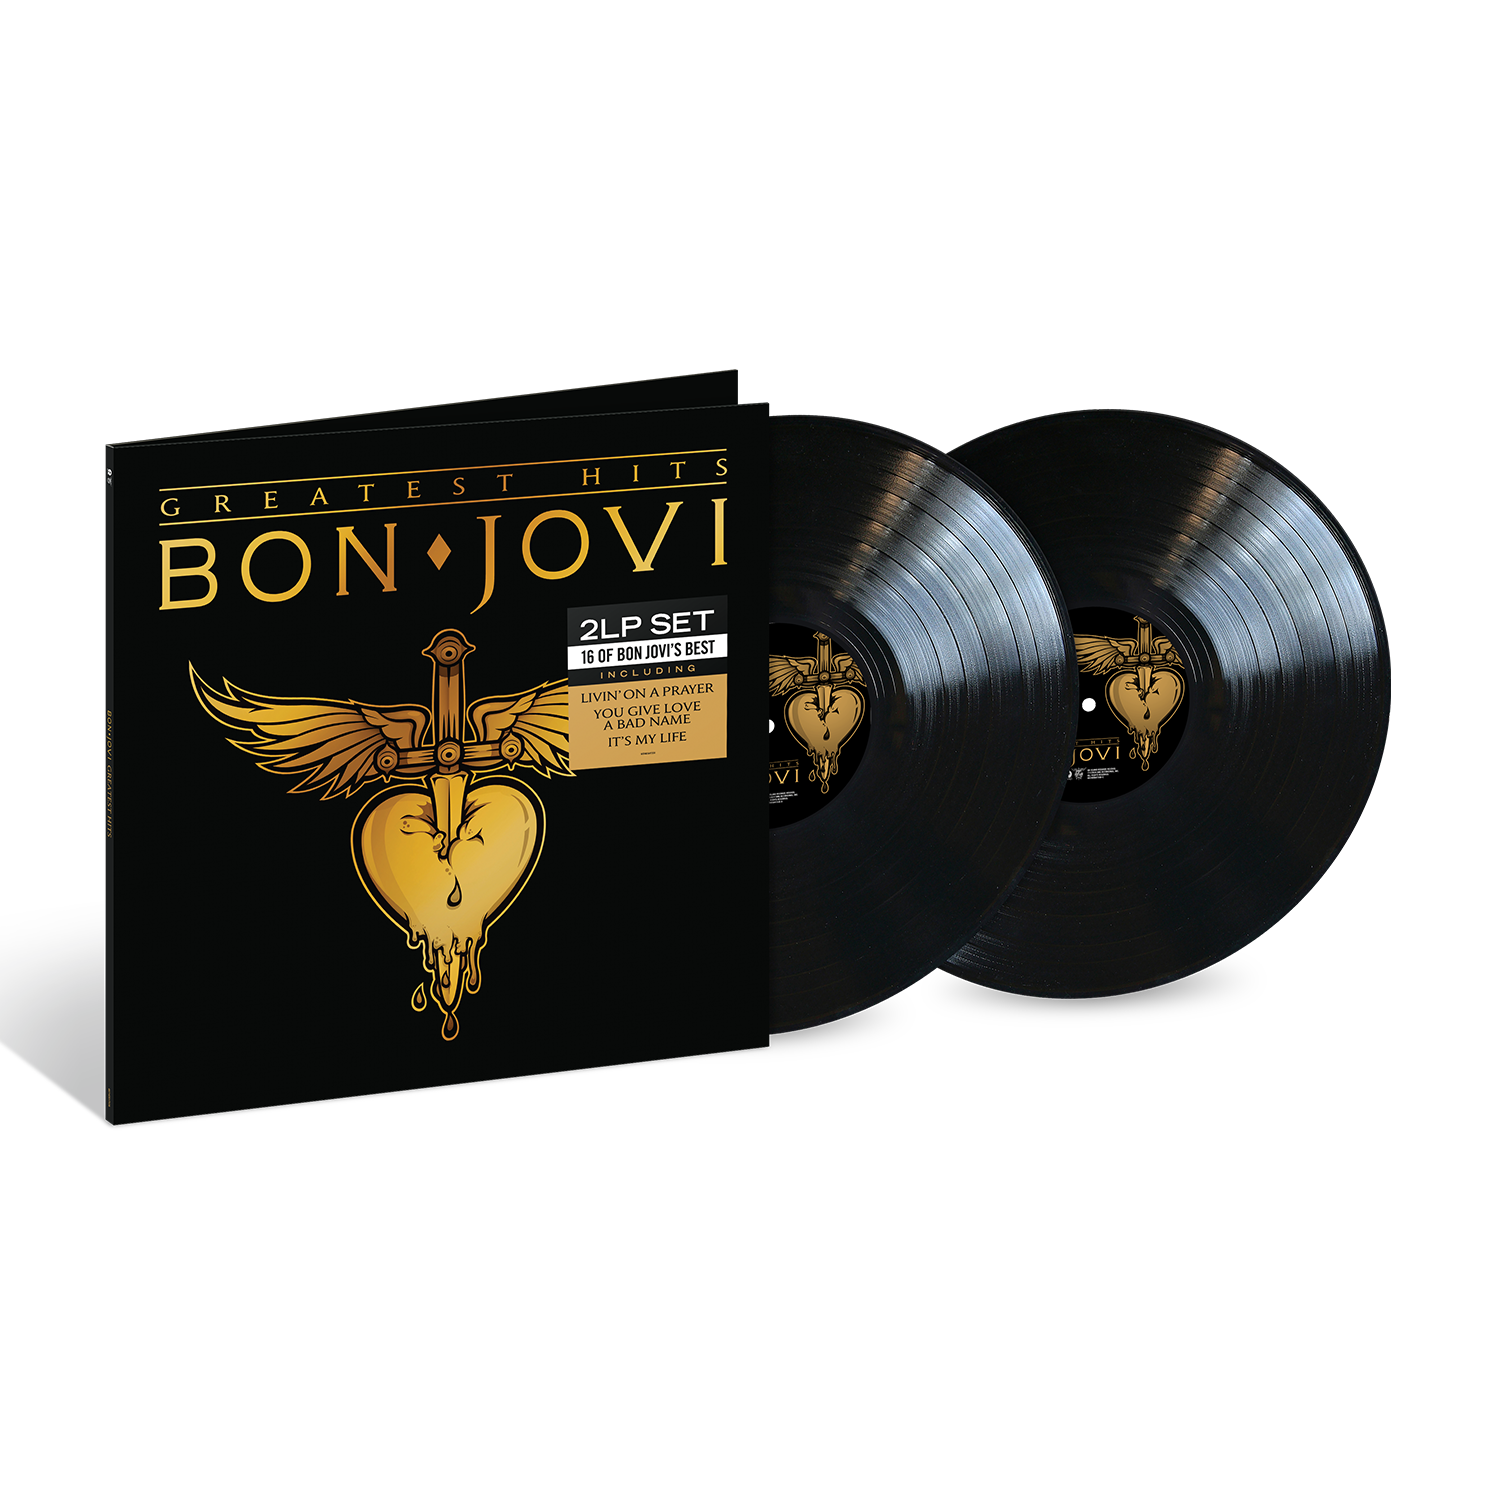 Bon Jovi - Greatest Hits: Vinyl 2LP